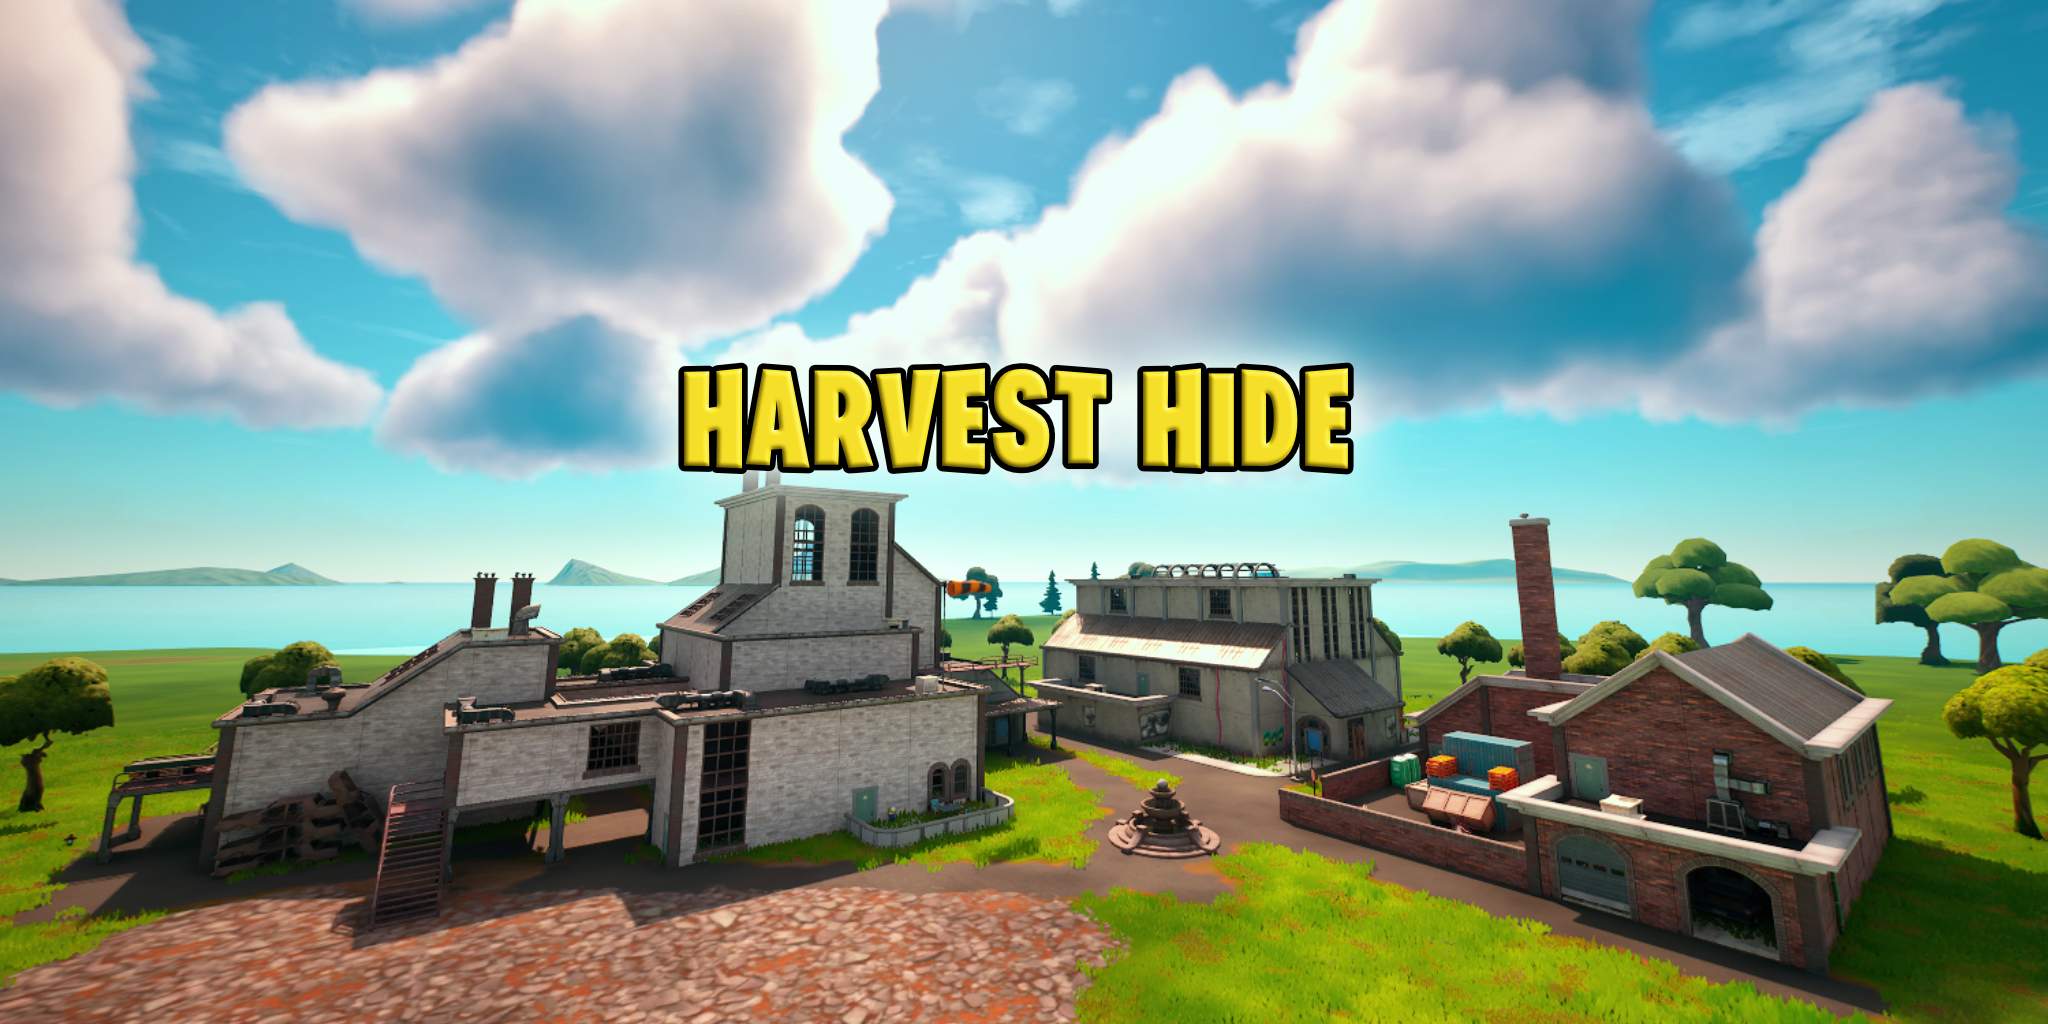 Harvest Hide - Prop Hunt image 3